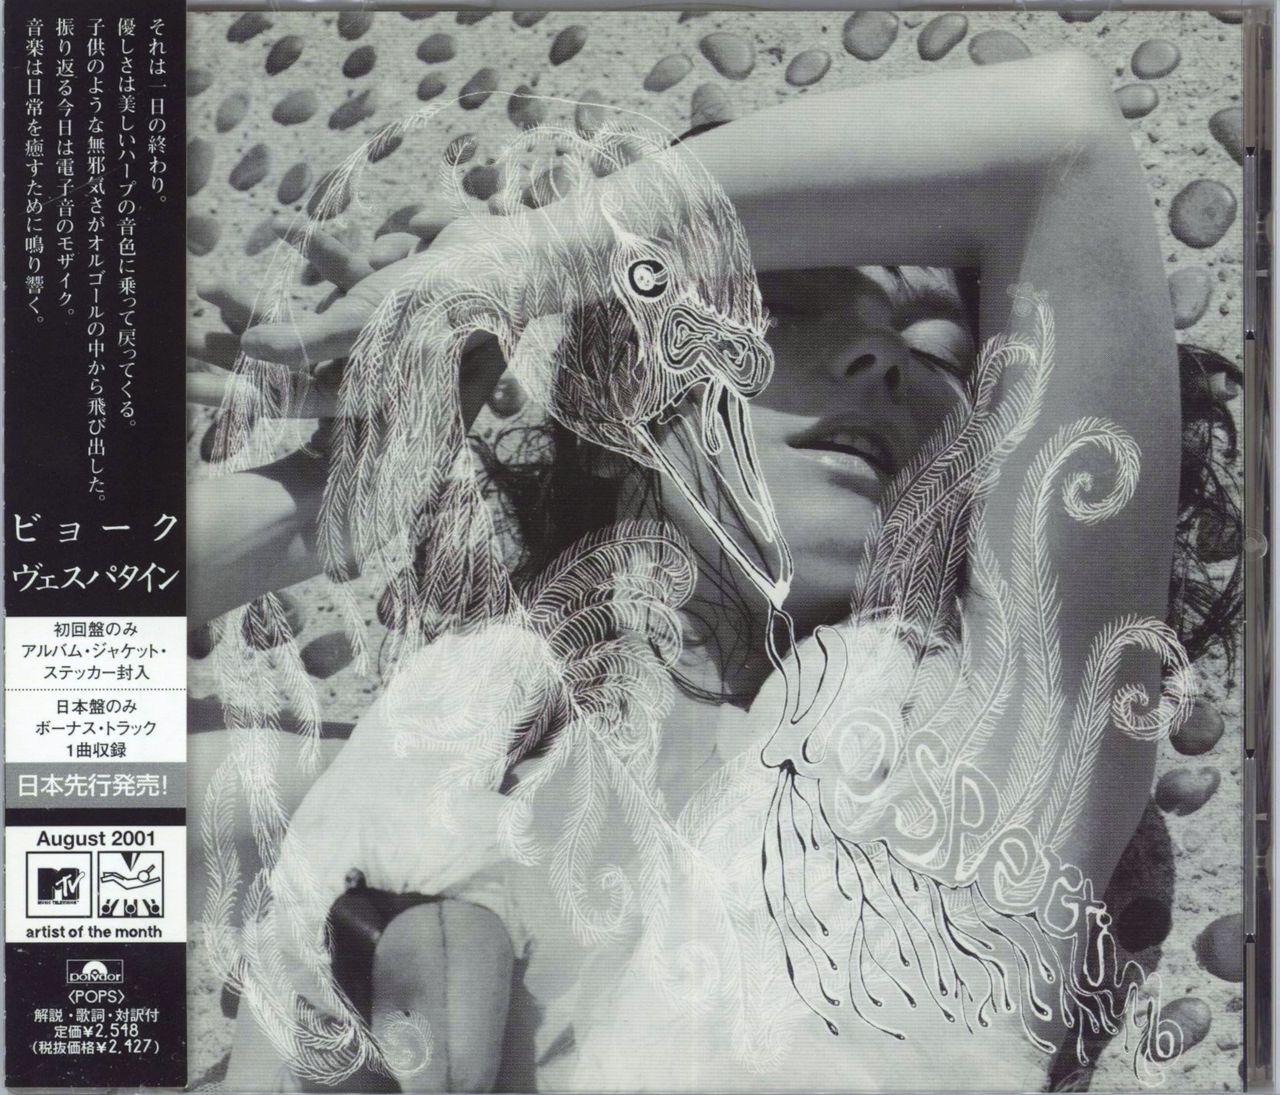 Björk Vespertine Japanese CD album — RareVinyl.com